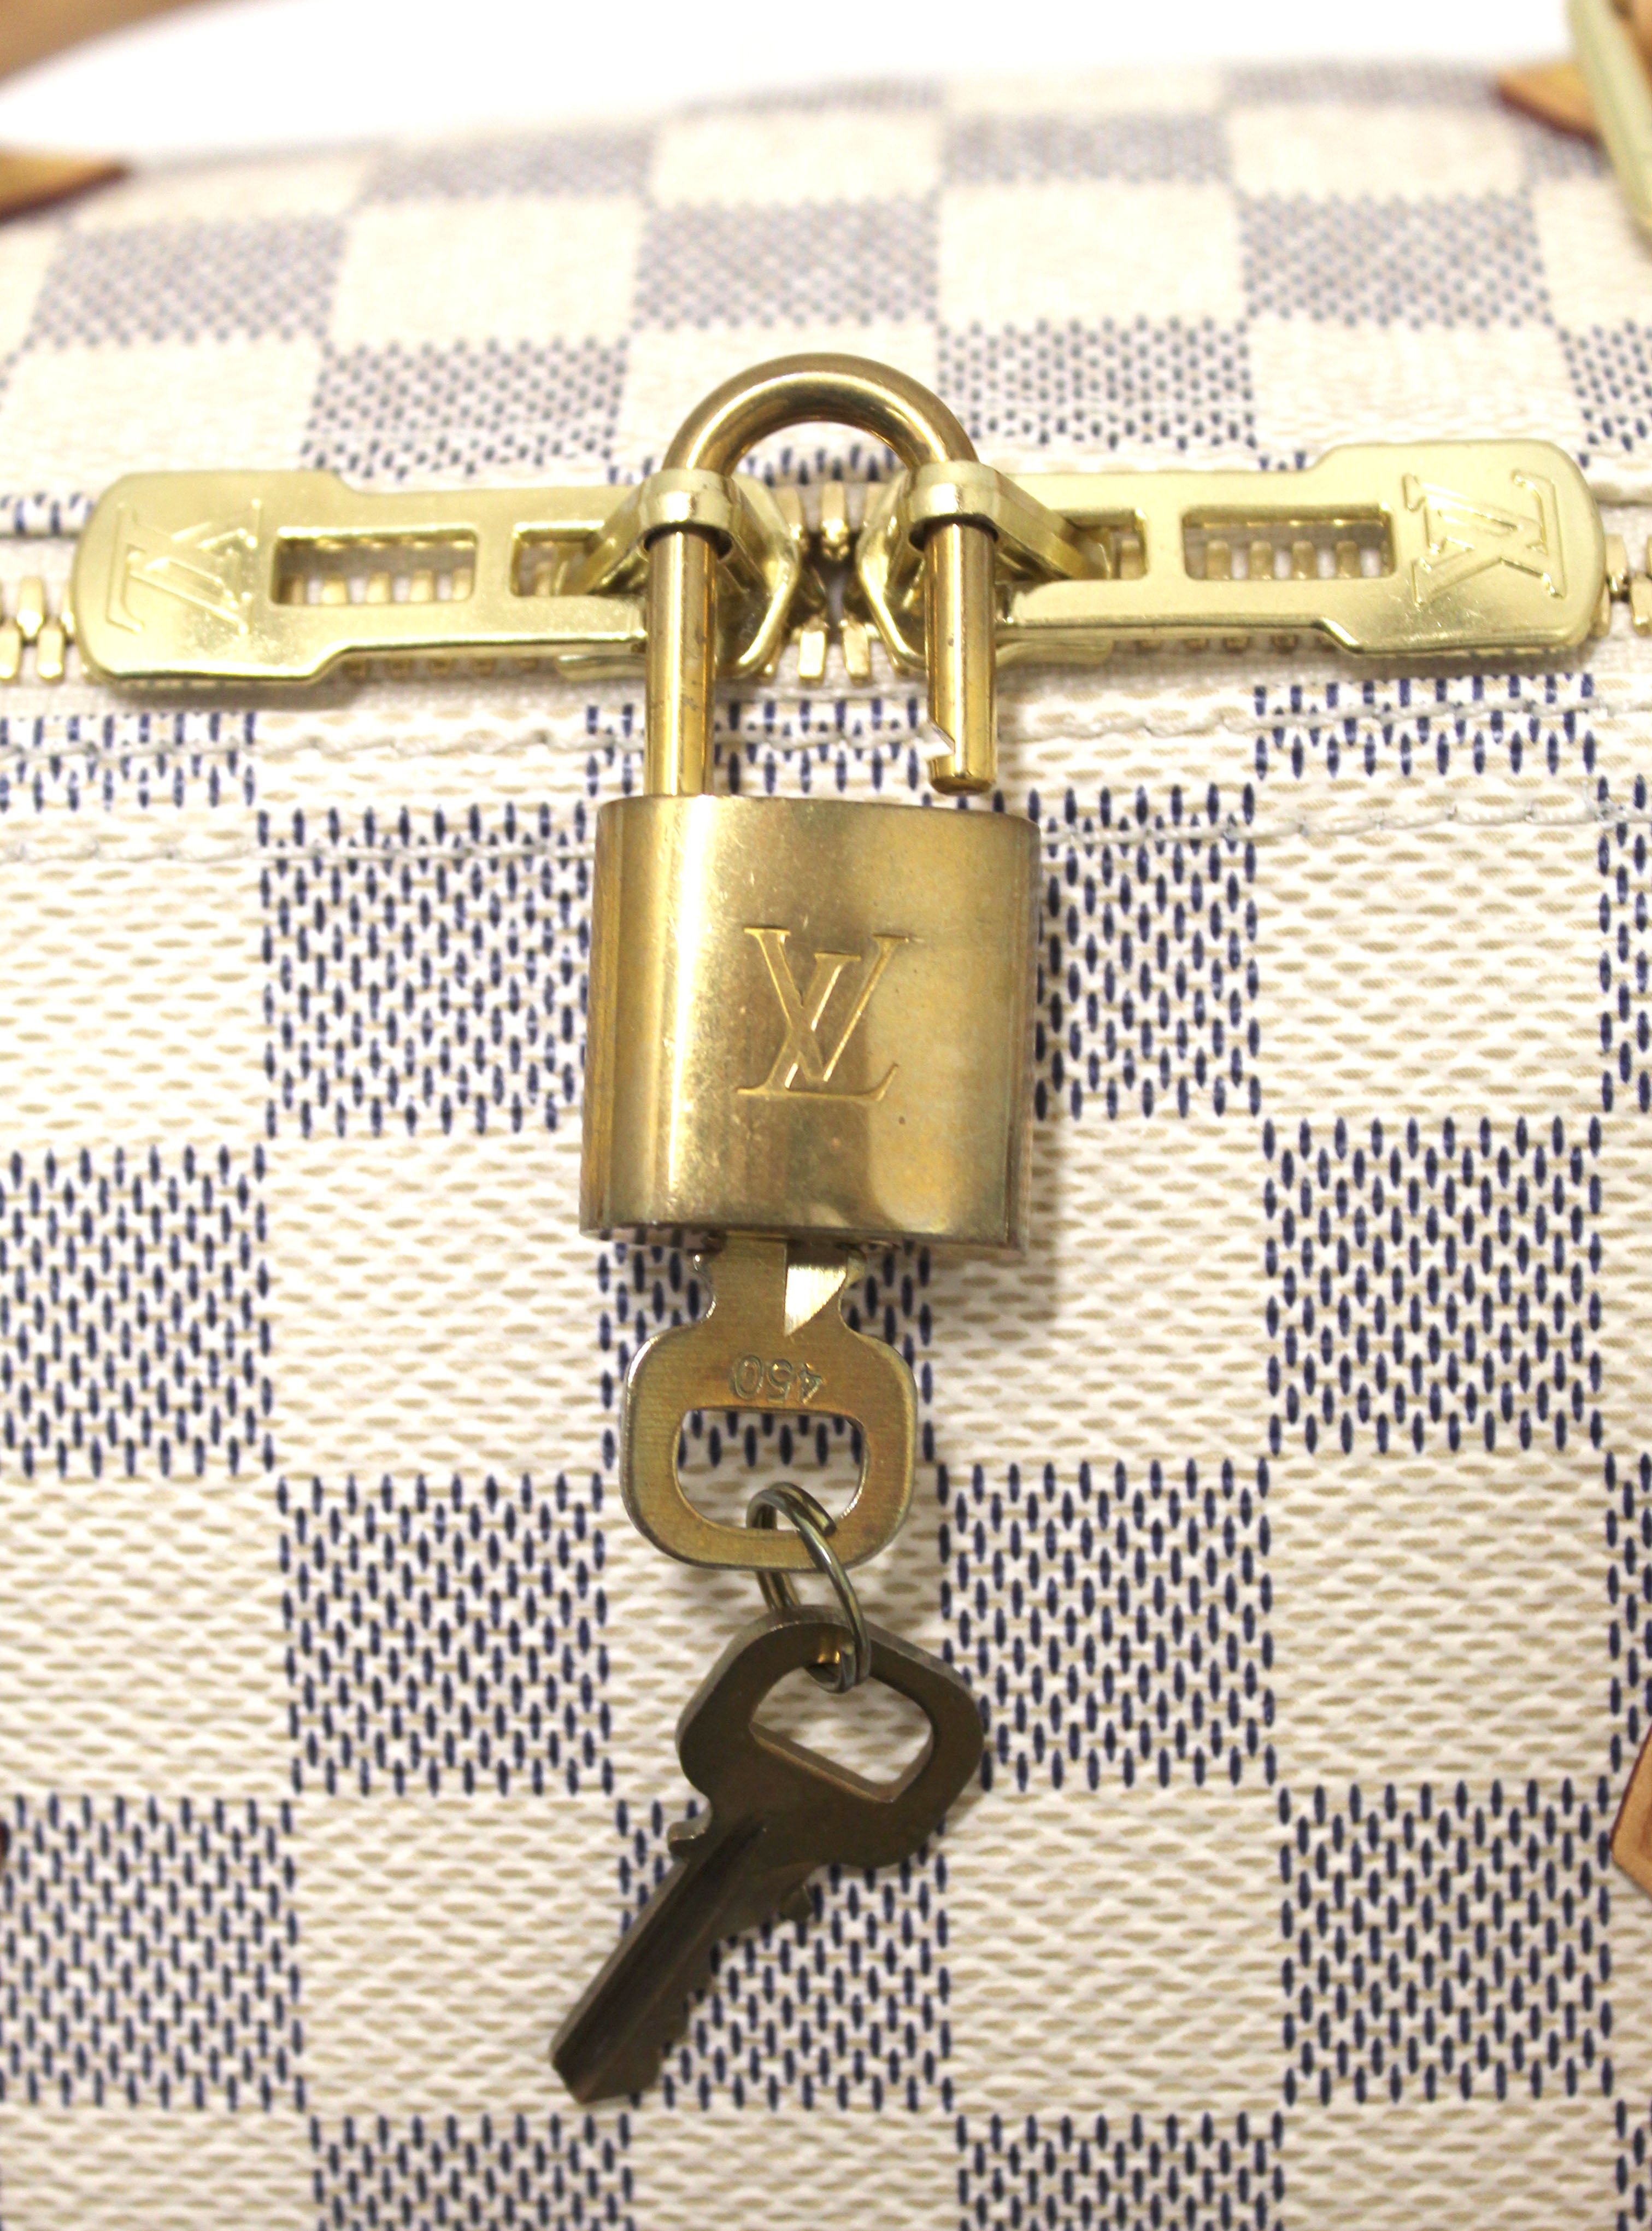 SOLDDDDDLouis Vuitton Speedy 30 lock key box bag